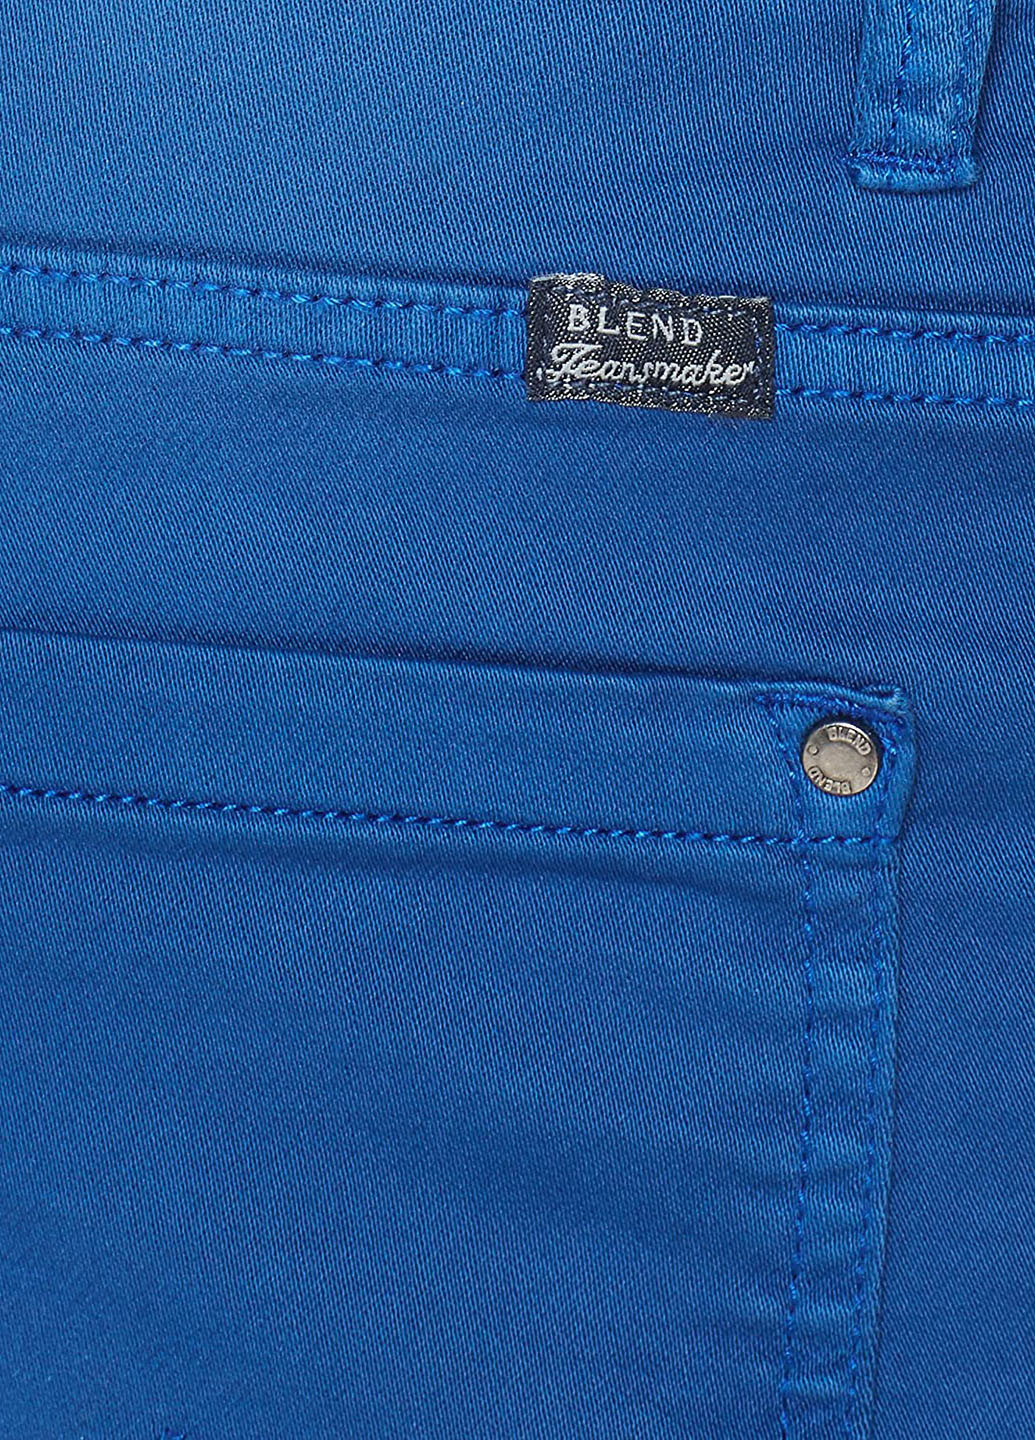 Шорты Blend однотонные синие джинсовые хлопок